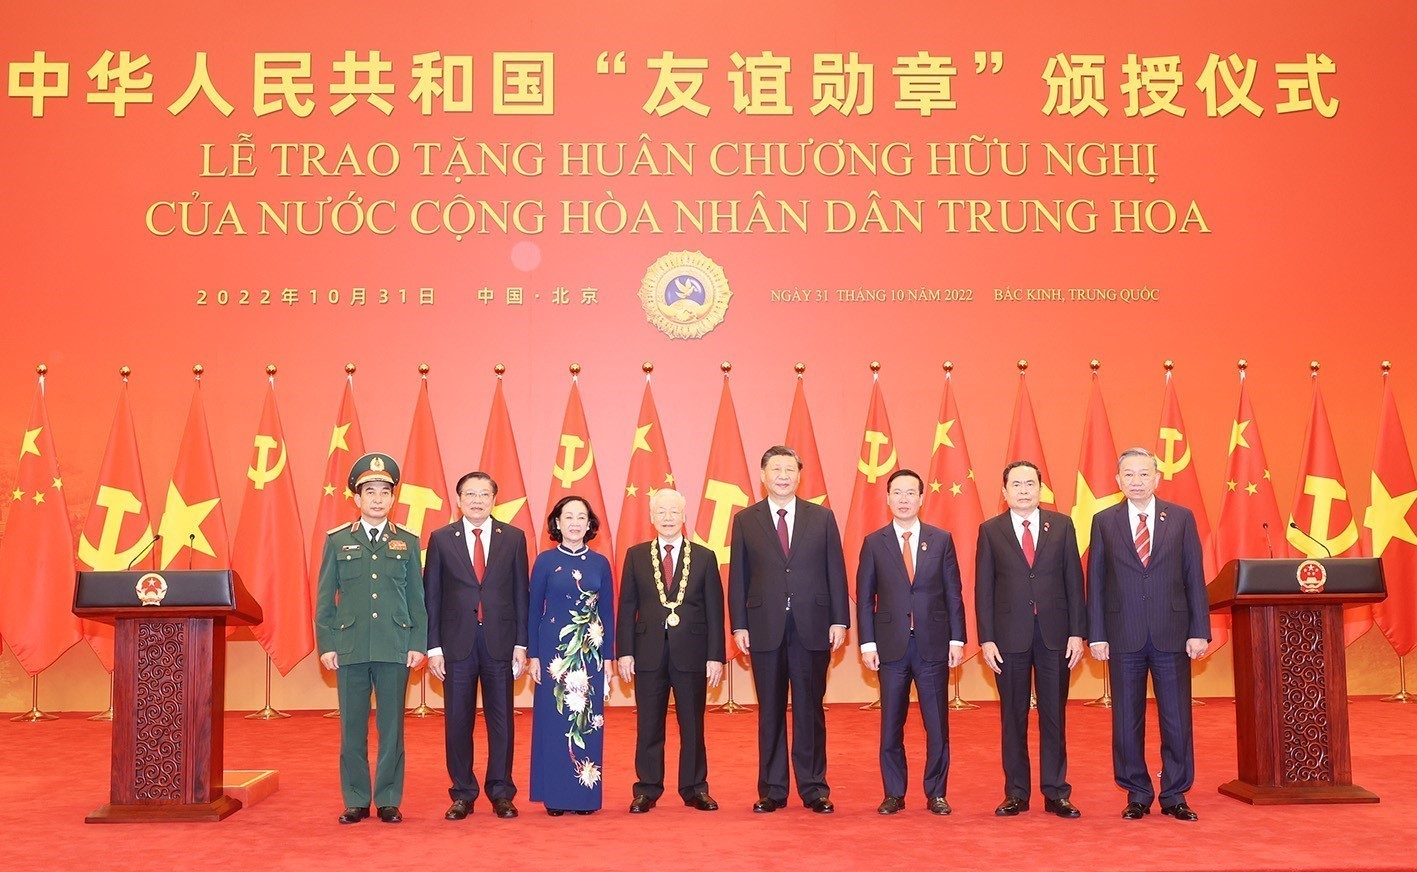 Tổng Bí thư, Chủ tịch Trung Quốc Tập Cận Bình và Tổng Bí thư Nguyễn Phú Trọng chụp ảnh với các thành viên Đoàn đại biểu cấp cao Việt Nam tại buổi Lễ